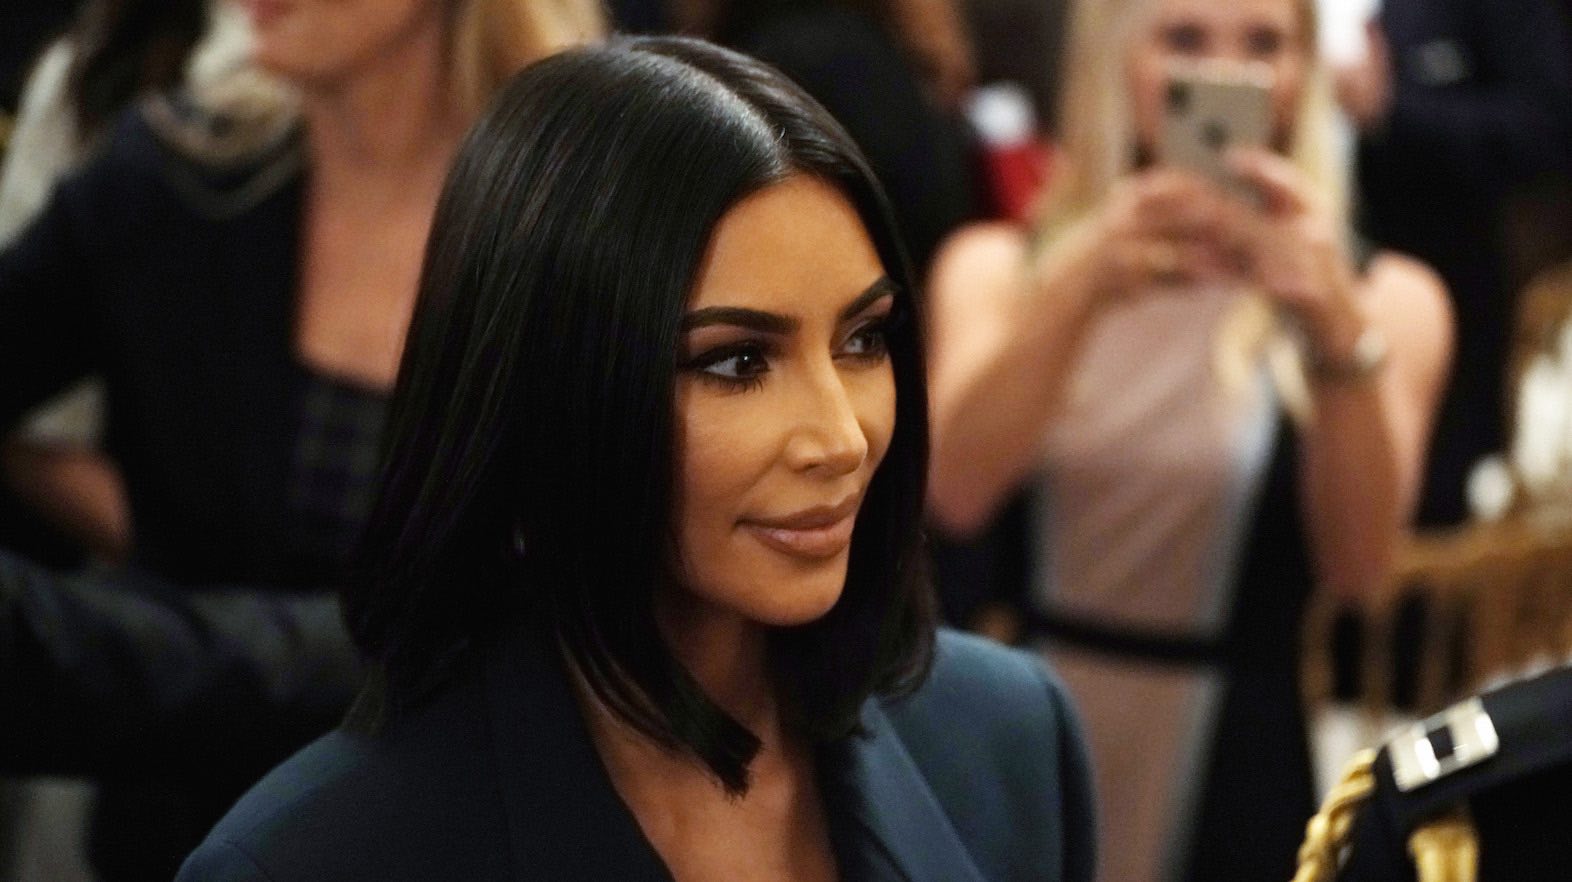 La exposición del V&A que Kim Kardashian agregará a su agenda